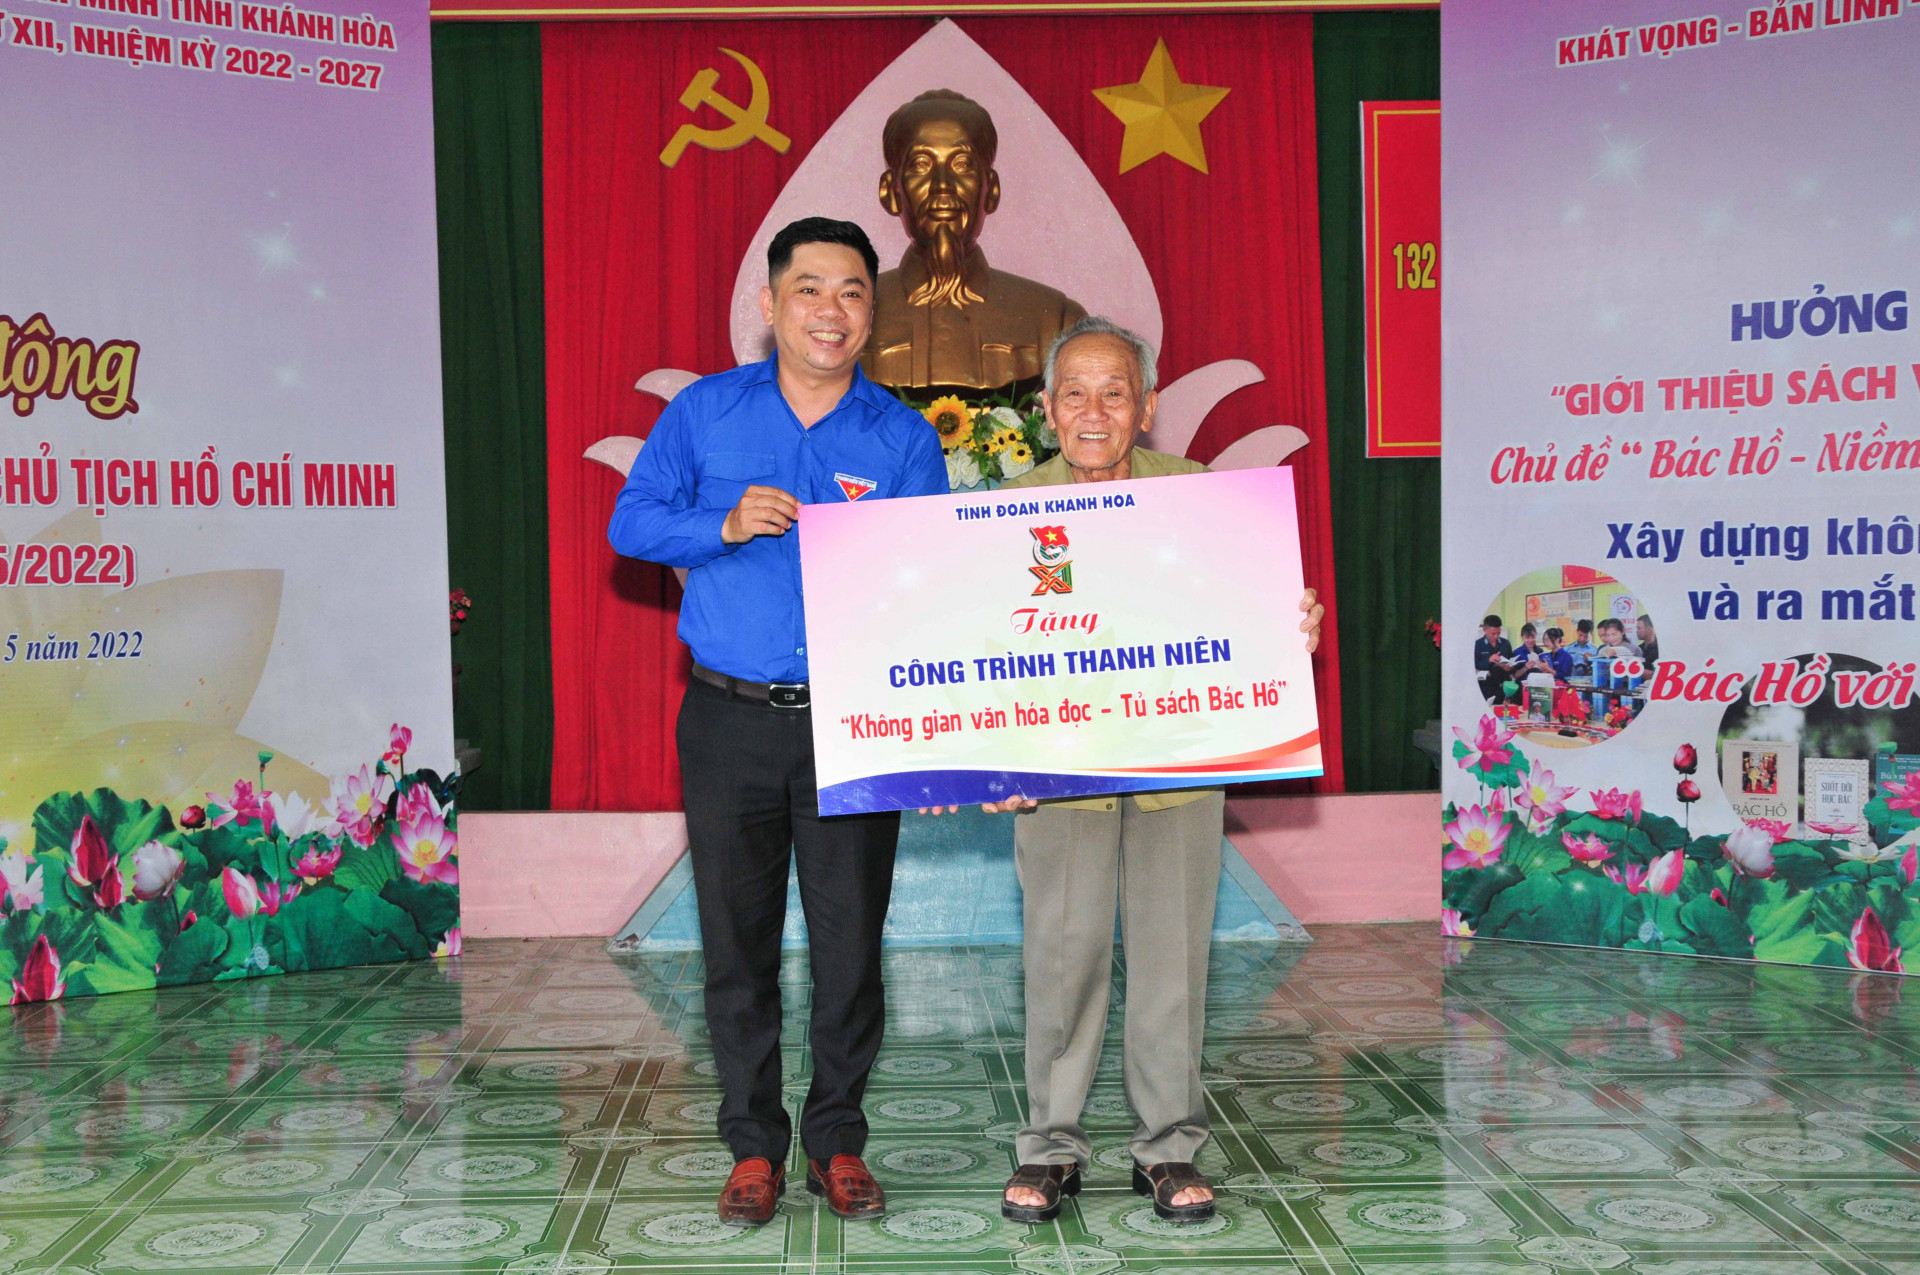 Lãnh đạo Tỉnh đoàn trao biểu trưng công trình thanh niên cho ông Bùi Xuân Phước, người xây dựng Khu tưởng niệm Chủ tịch Hồ Chí Minh 